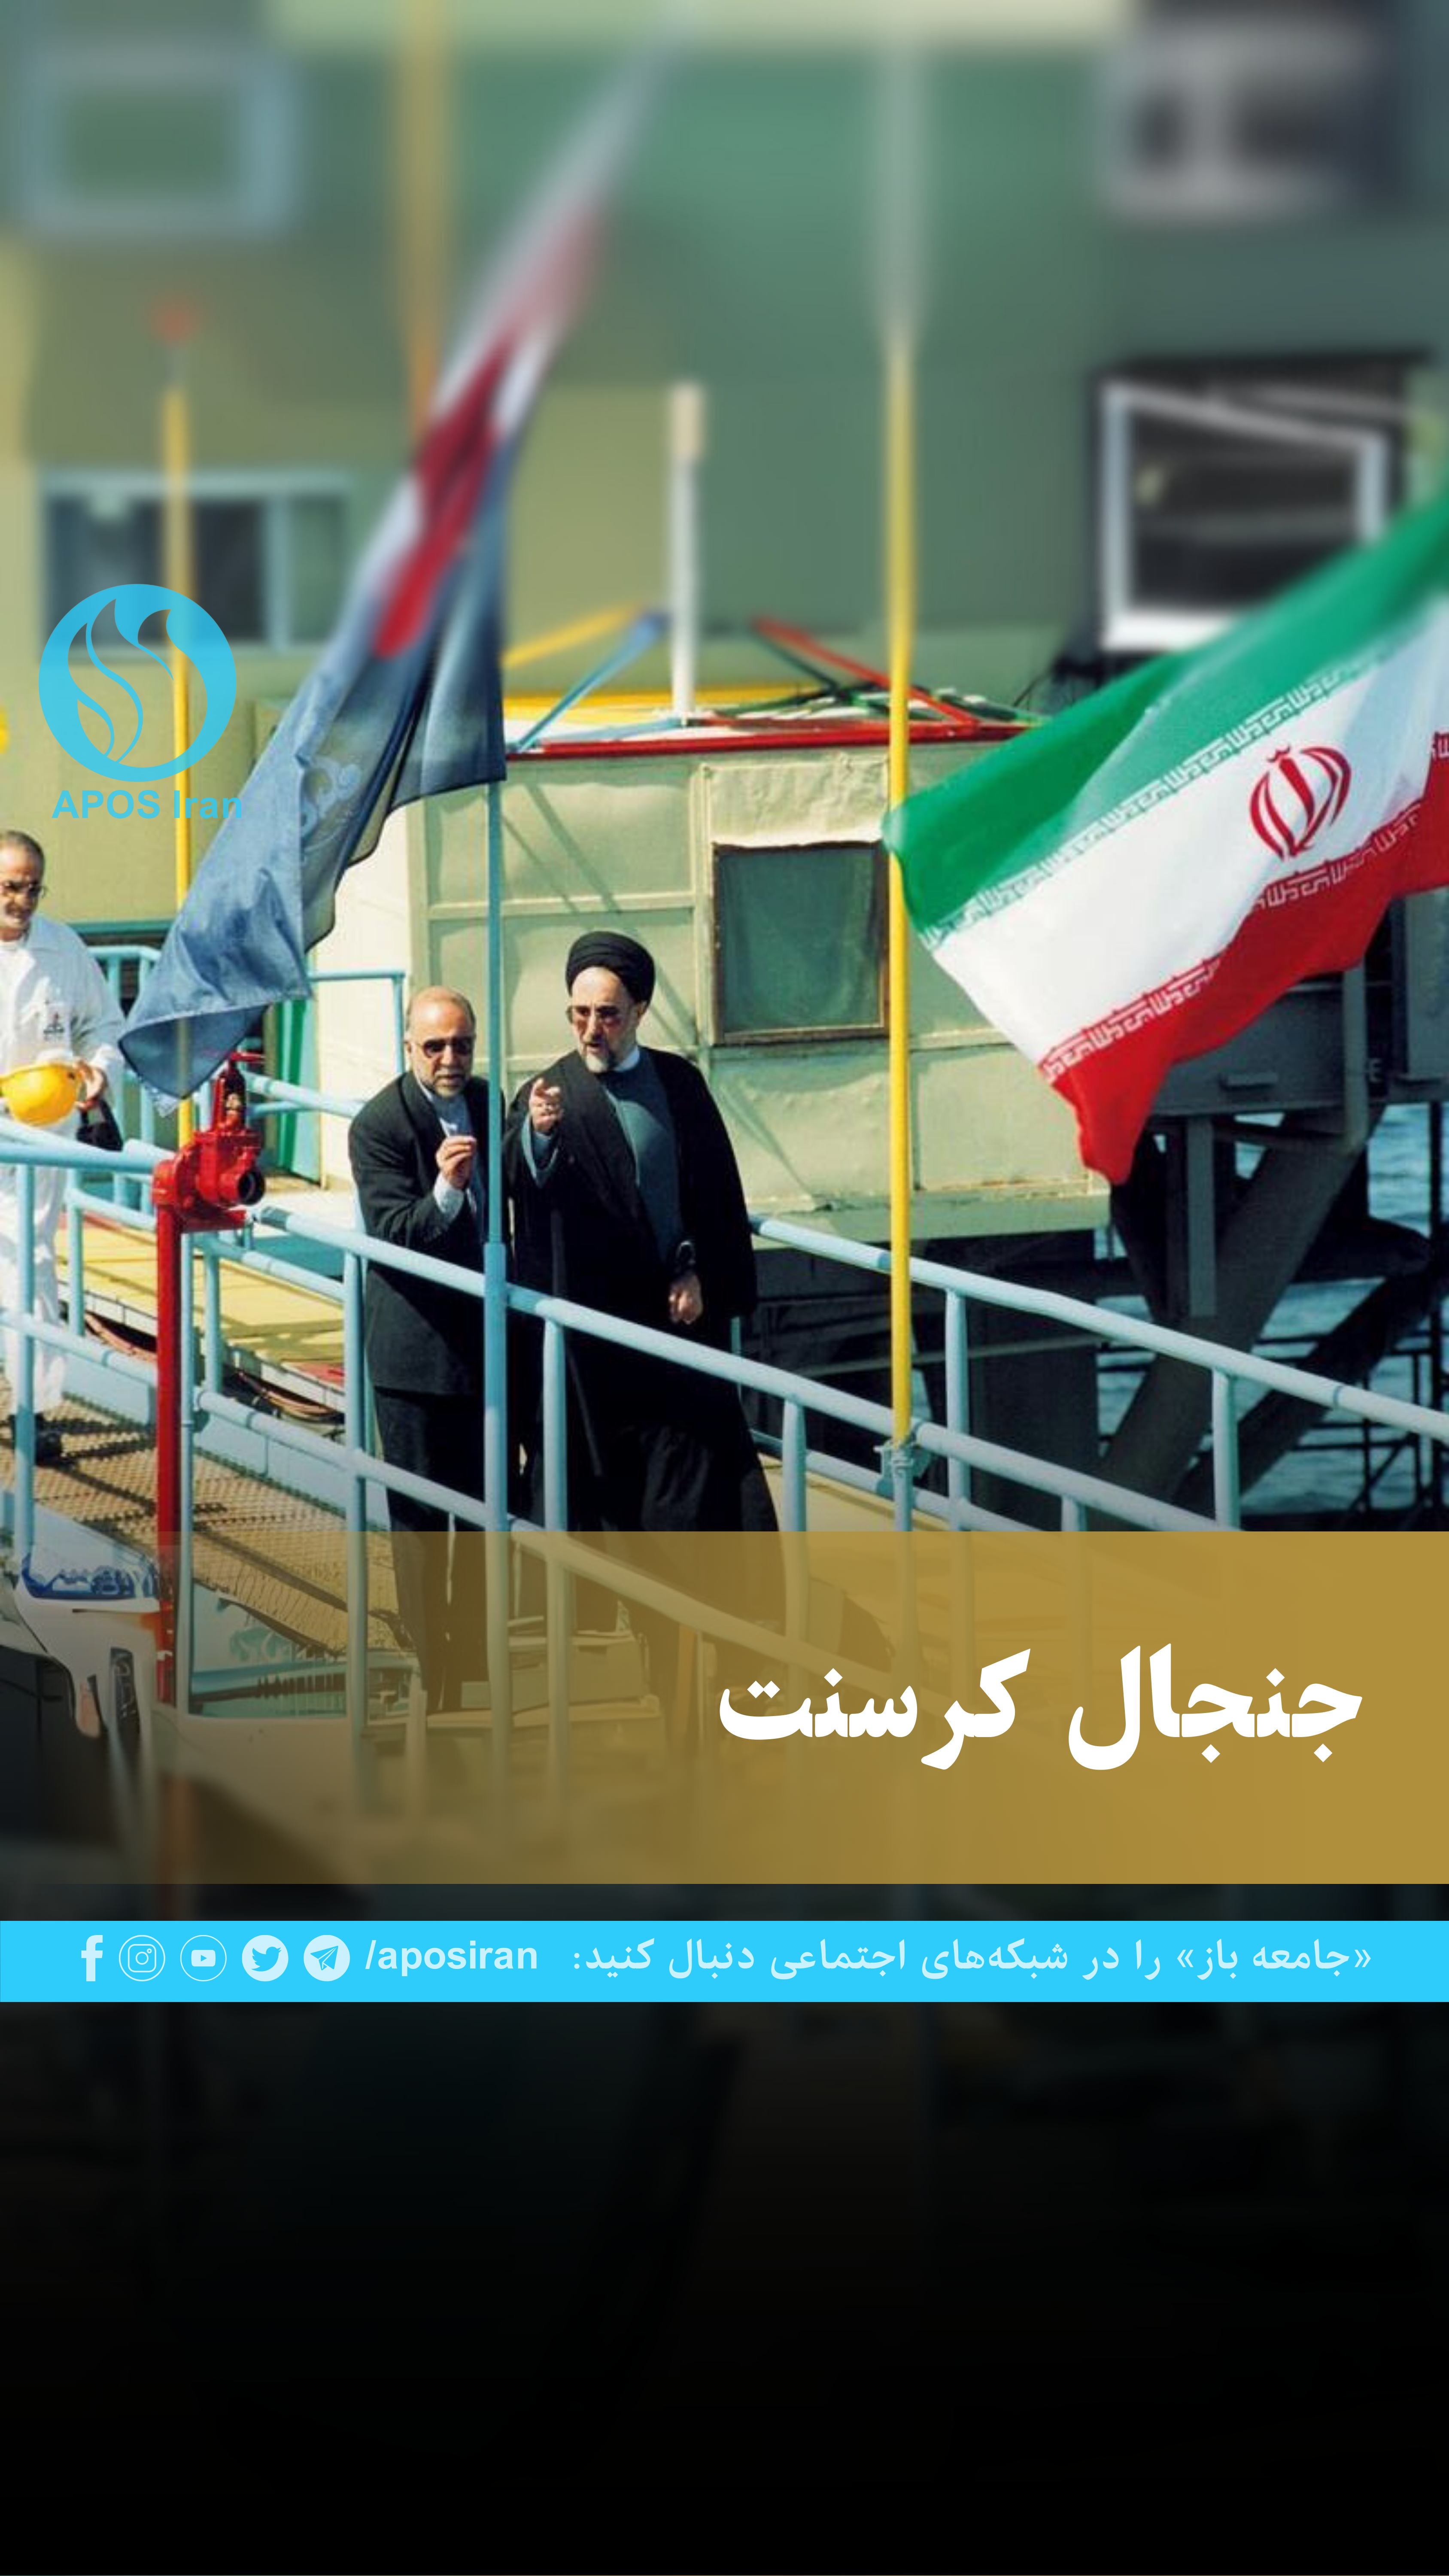 قرارداد کرسنت برای فروش روزانه ۱۵ میلیون متر مکعب گاز در سال ۱۳۸۱ بین شرکت کرسنت پترولیوم و شرکت ملی نفت ایران به مدت ۲۵ سال به امضا رسید.